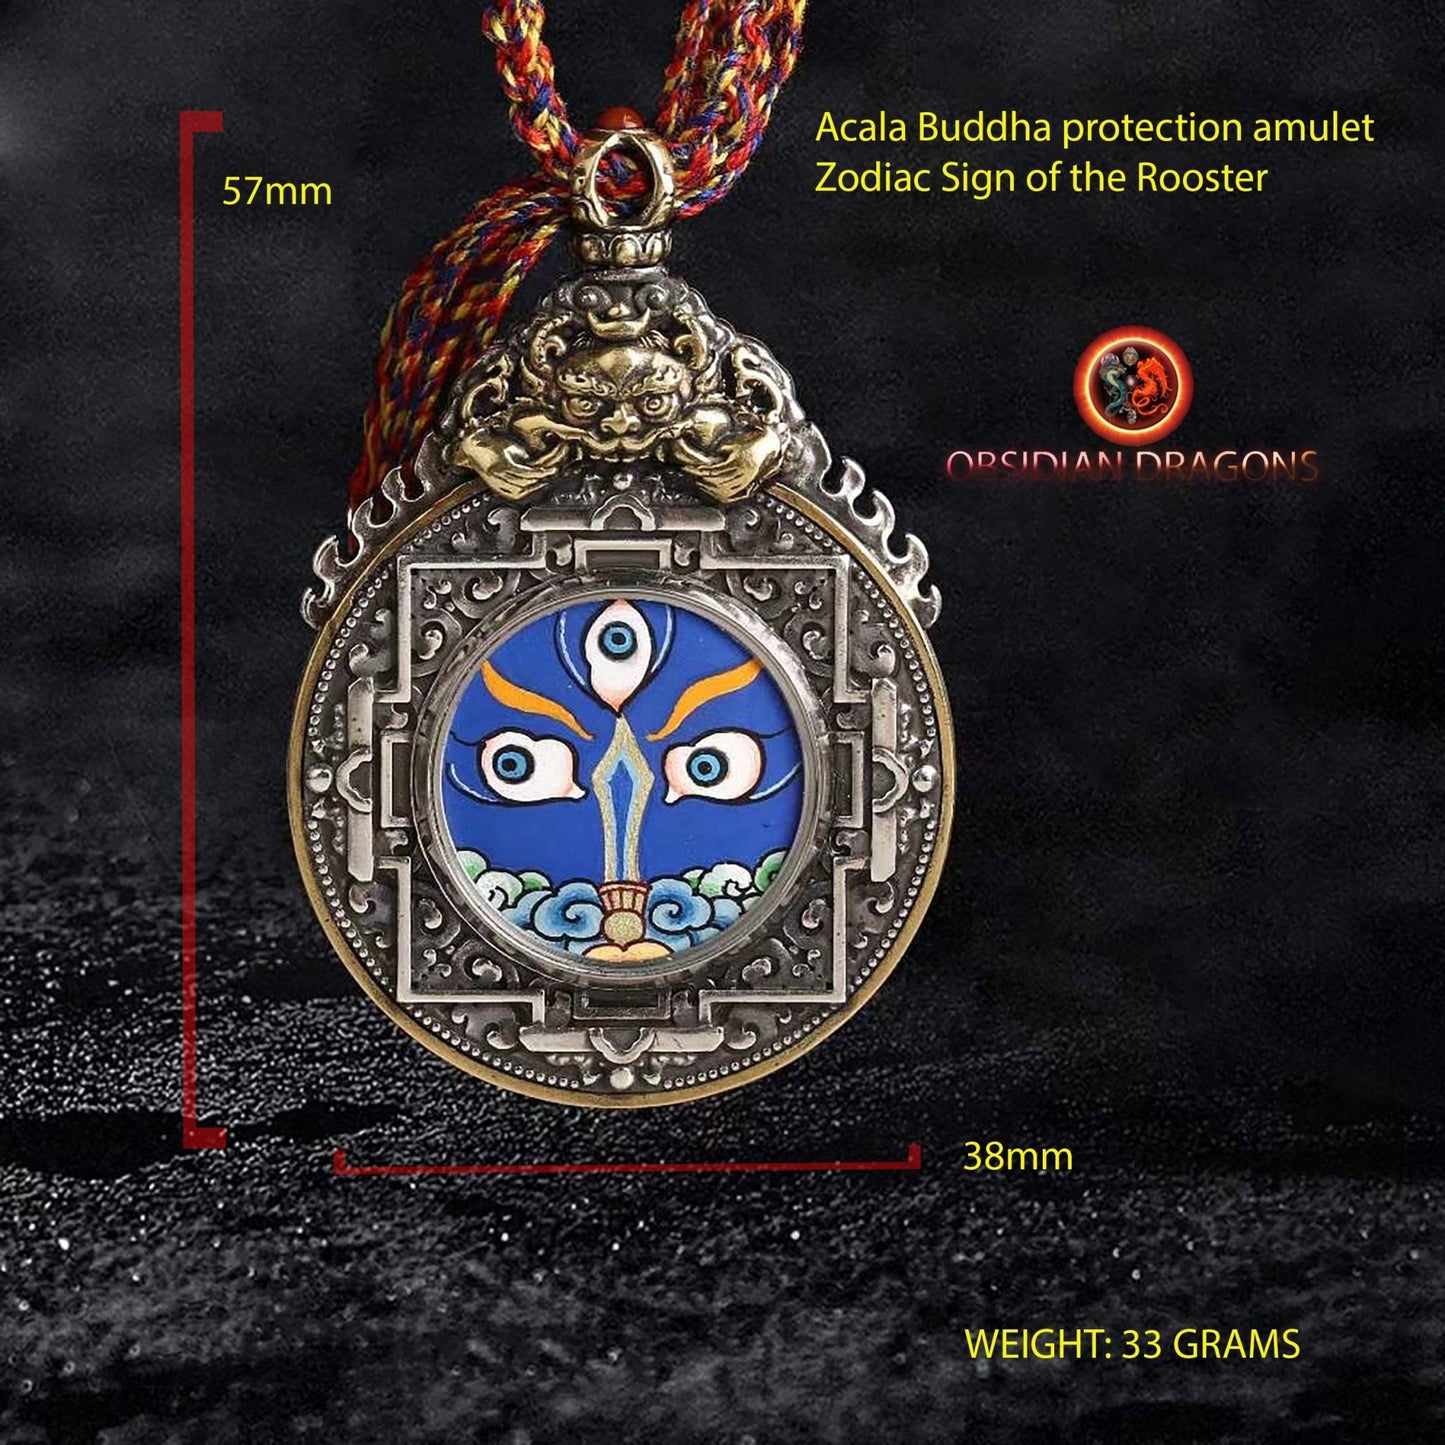 Ghau amulette pendentif bouddhiste tibetain, bouddha protecteur en fonction de son signe zodiacal au choix coq mouton singe buffle ou chien - obsidian dragon